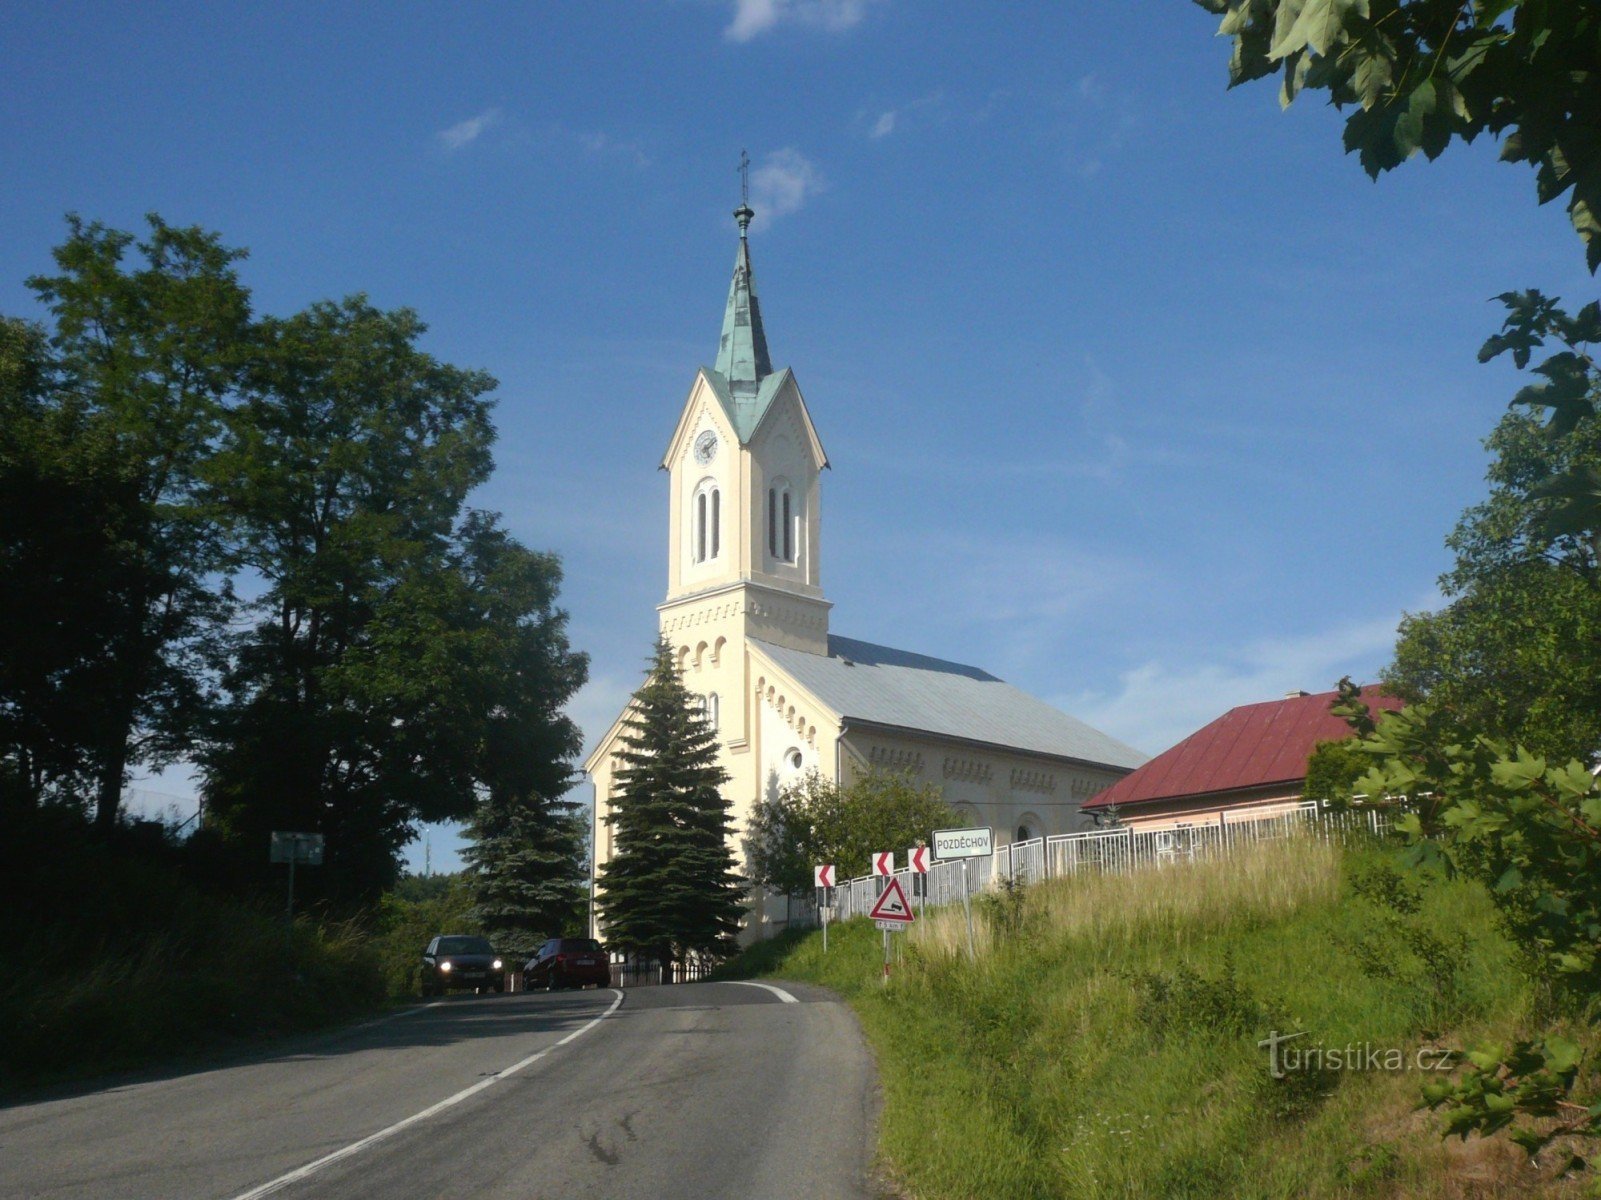 Pozděchov - nhà thờ Tin lành